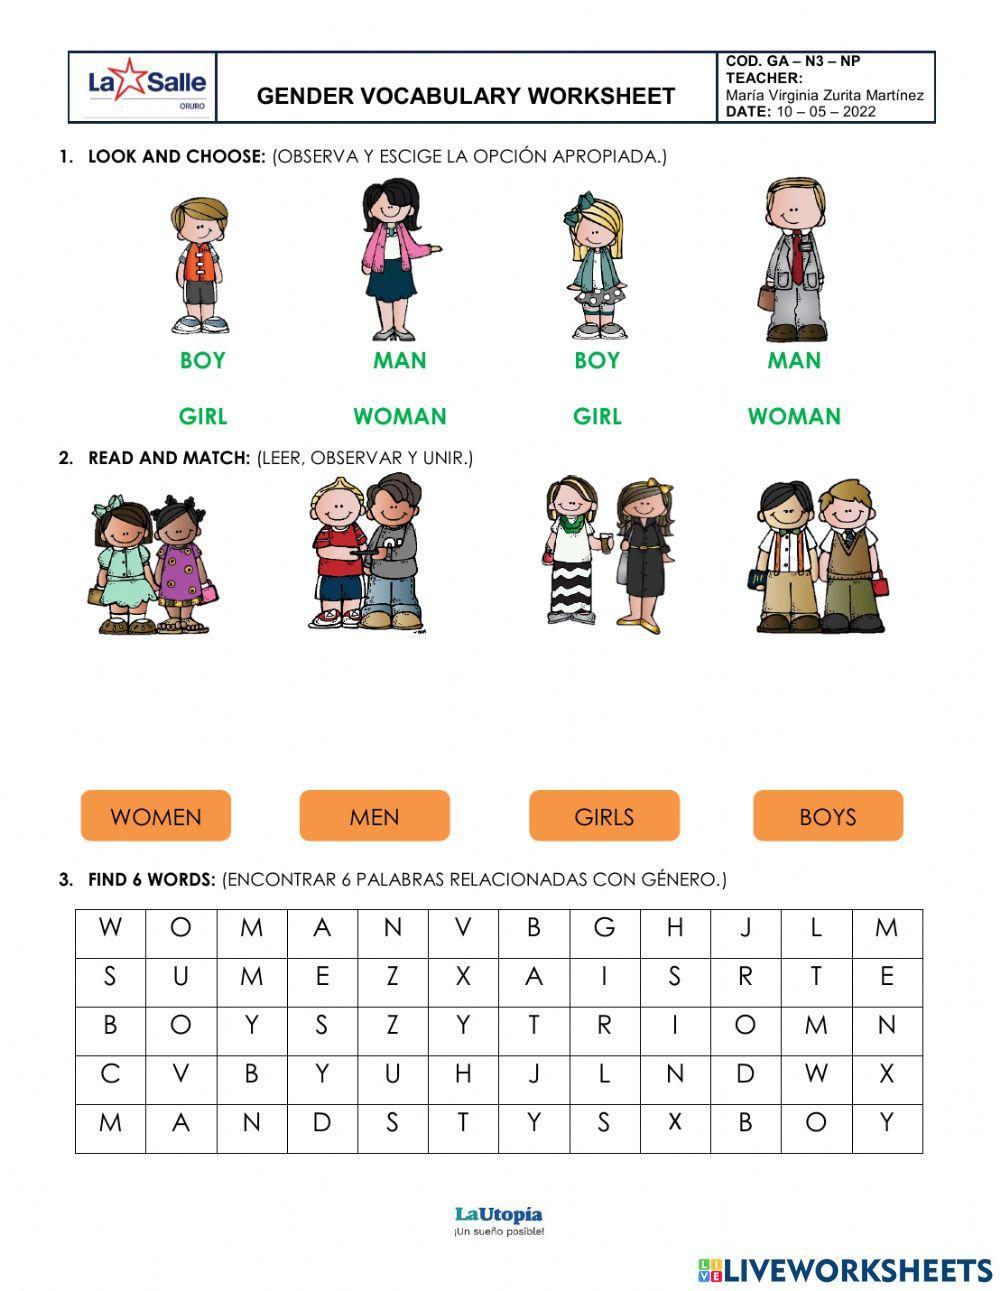 Gender vocabulary worksheet